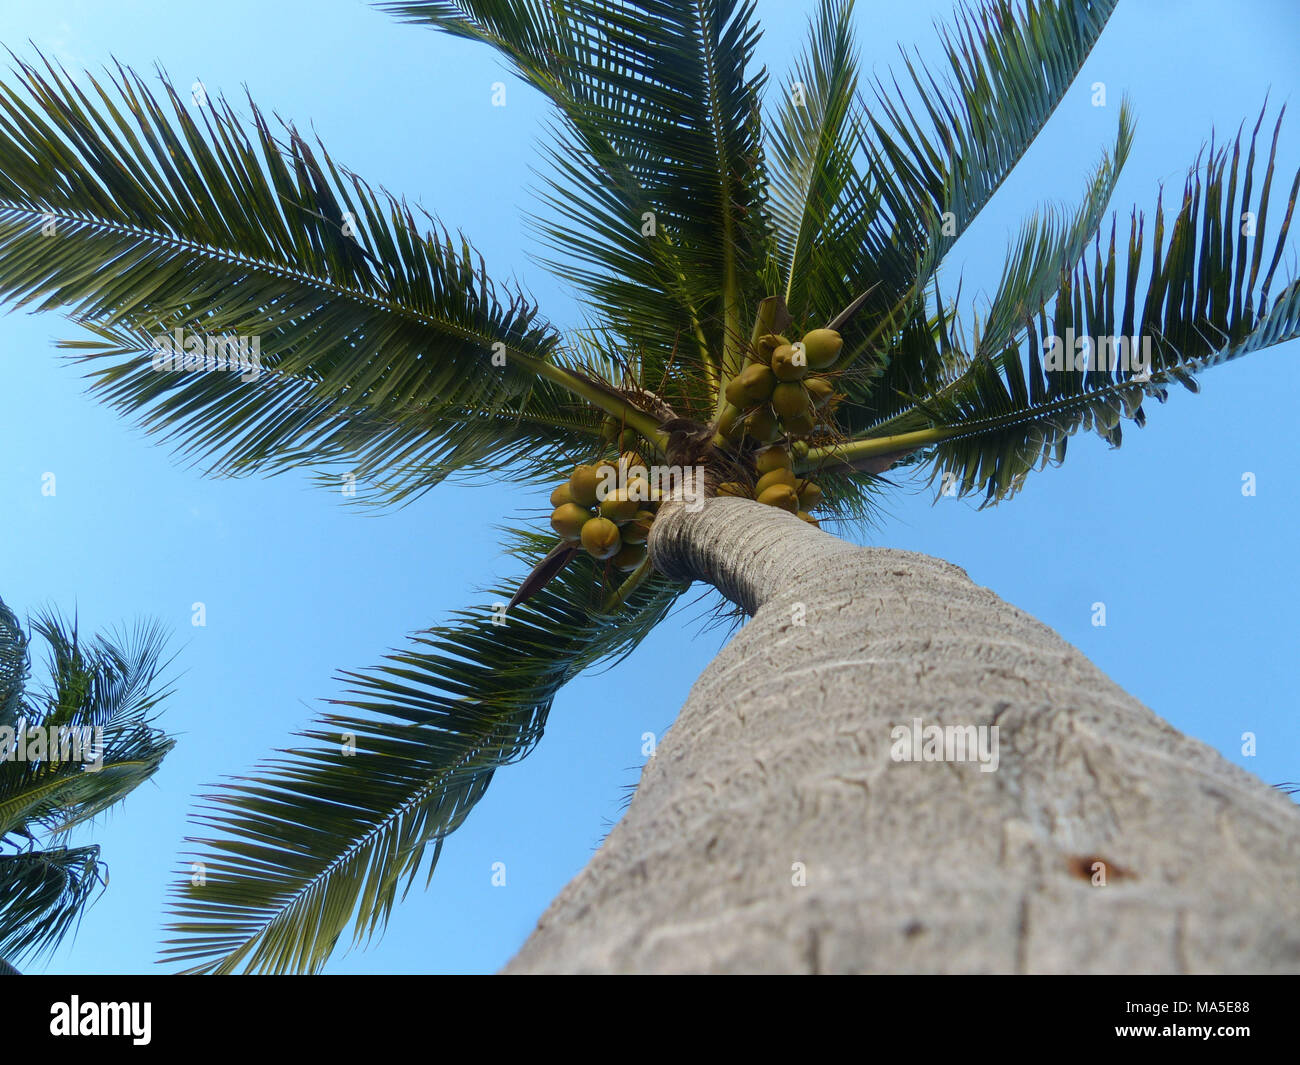 Kokospalme mit reifen Kokosnüsse. Fallende Kokosnüsse töten mehr Leute jedes Jahr als Haie Stockfoto